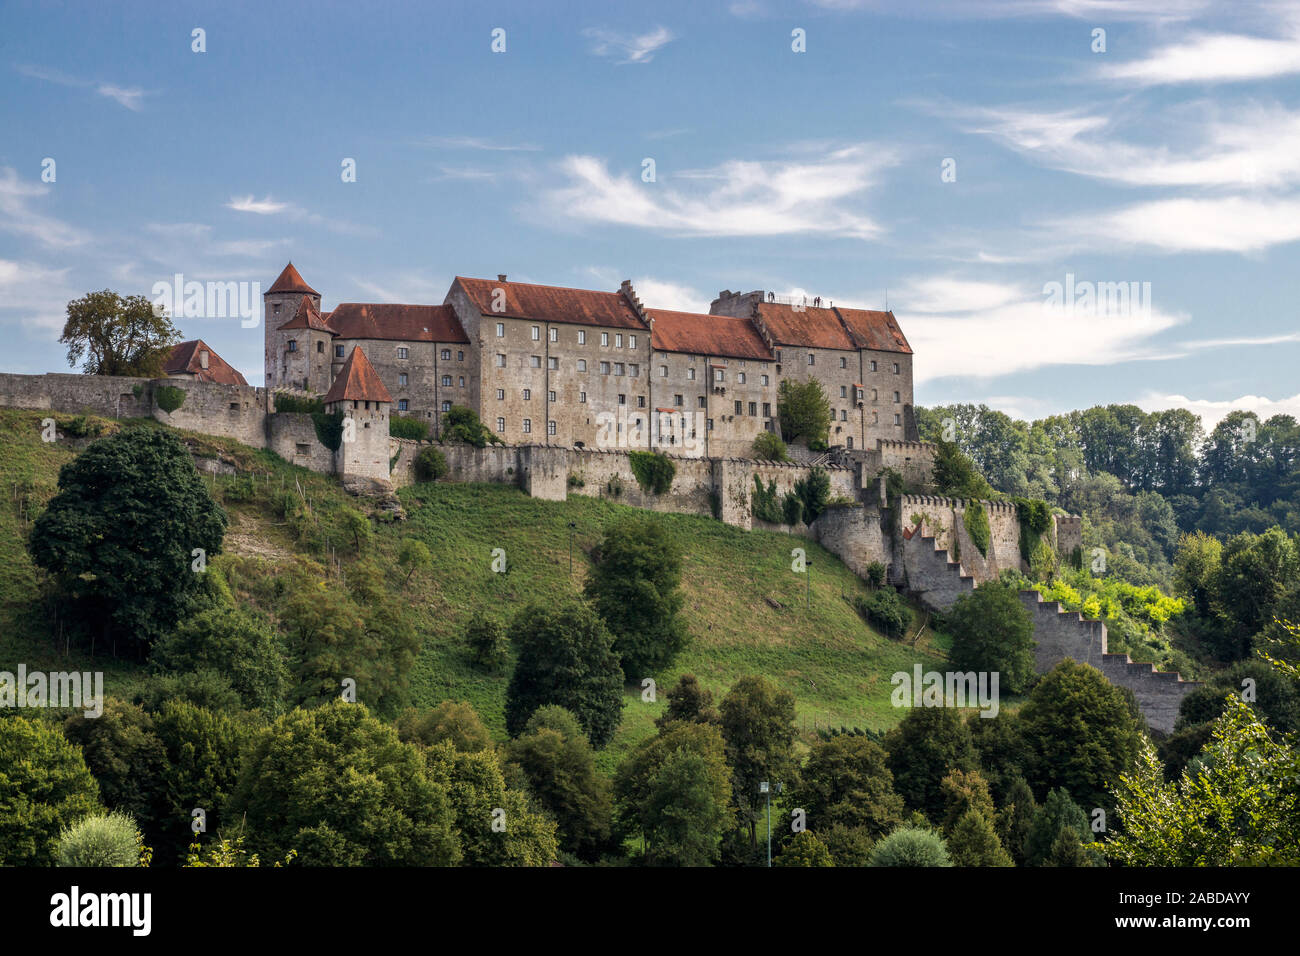 Die alte Herzogsstadt Burghausen liegt im oberbayerischen Landkreis Altötting und an der Salzach, die hier die Grenze zu Österreich bildet. Stock Photo